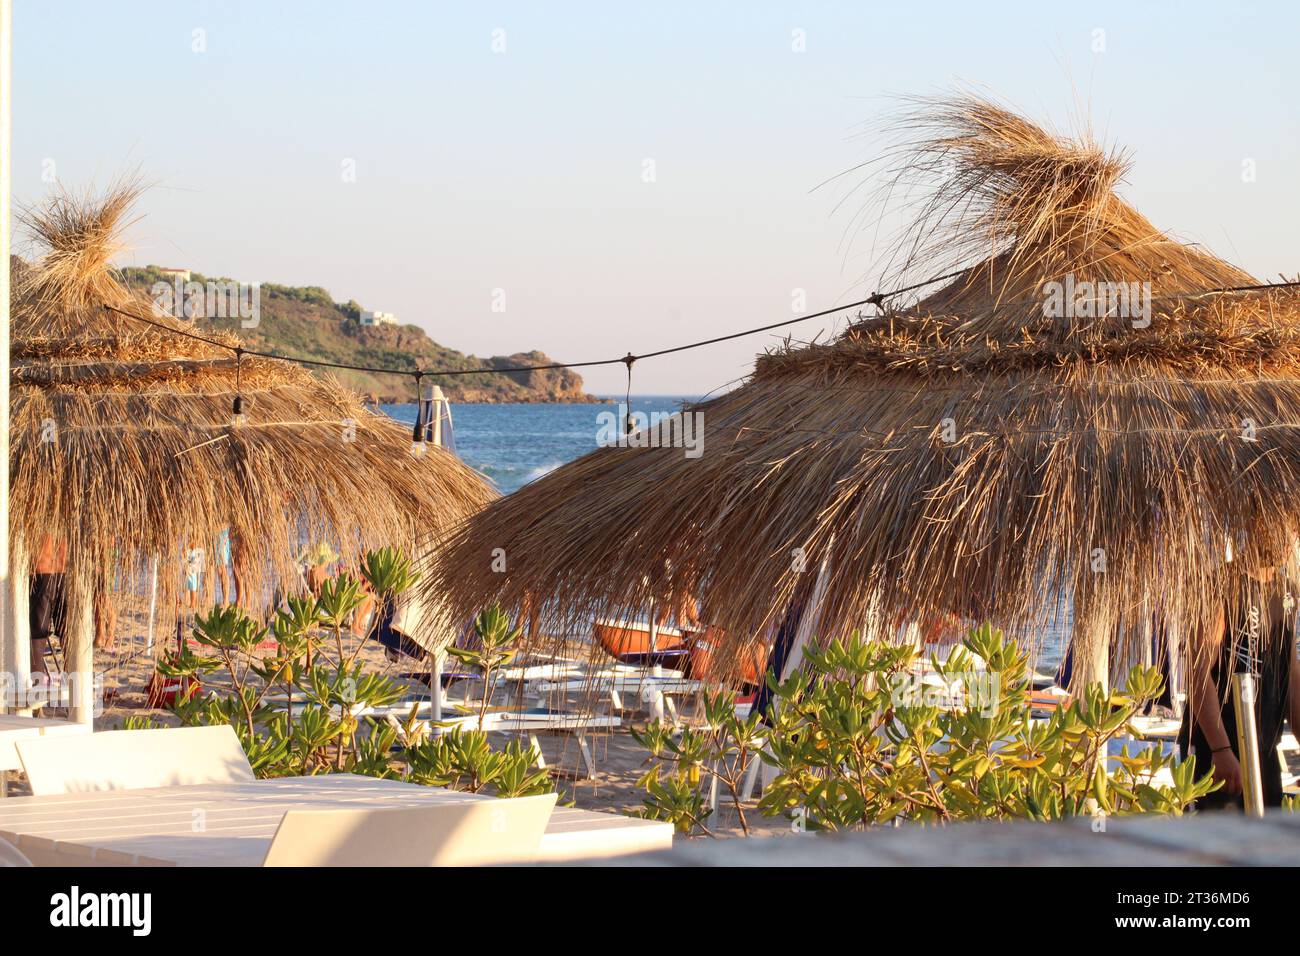 Vista de sombrillas de paja y la costa en la playa de San Marco en Sciacca Sicilia con luz de la puesta de sol de verano Foto de stock